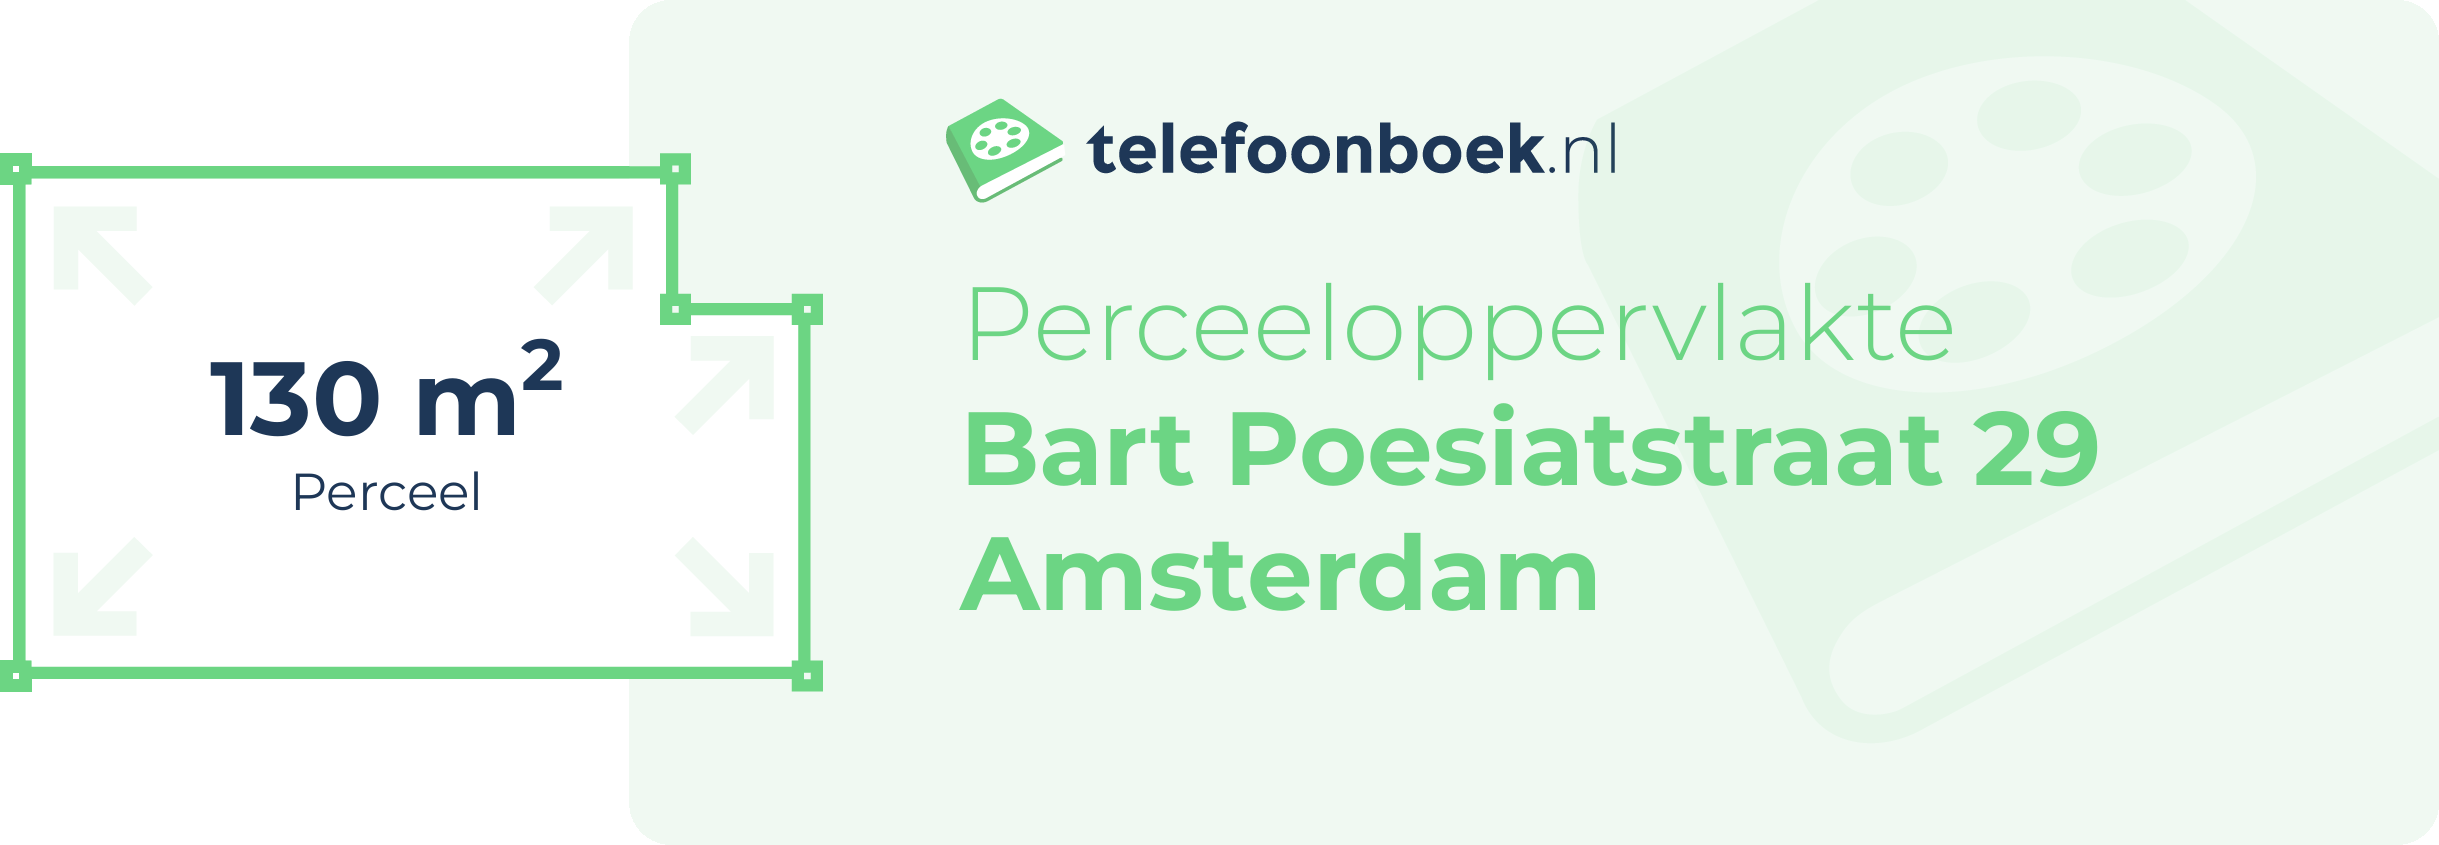 Perceeloppervlakte Bart Poesiatstraat 29 Amsterdam